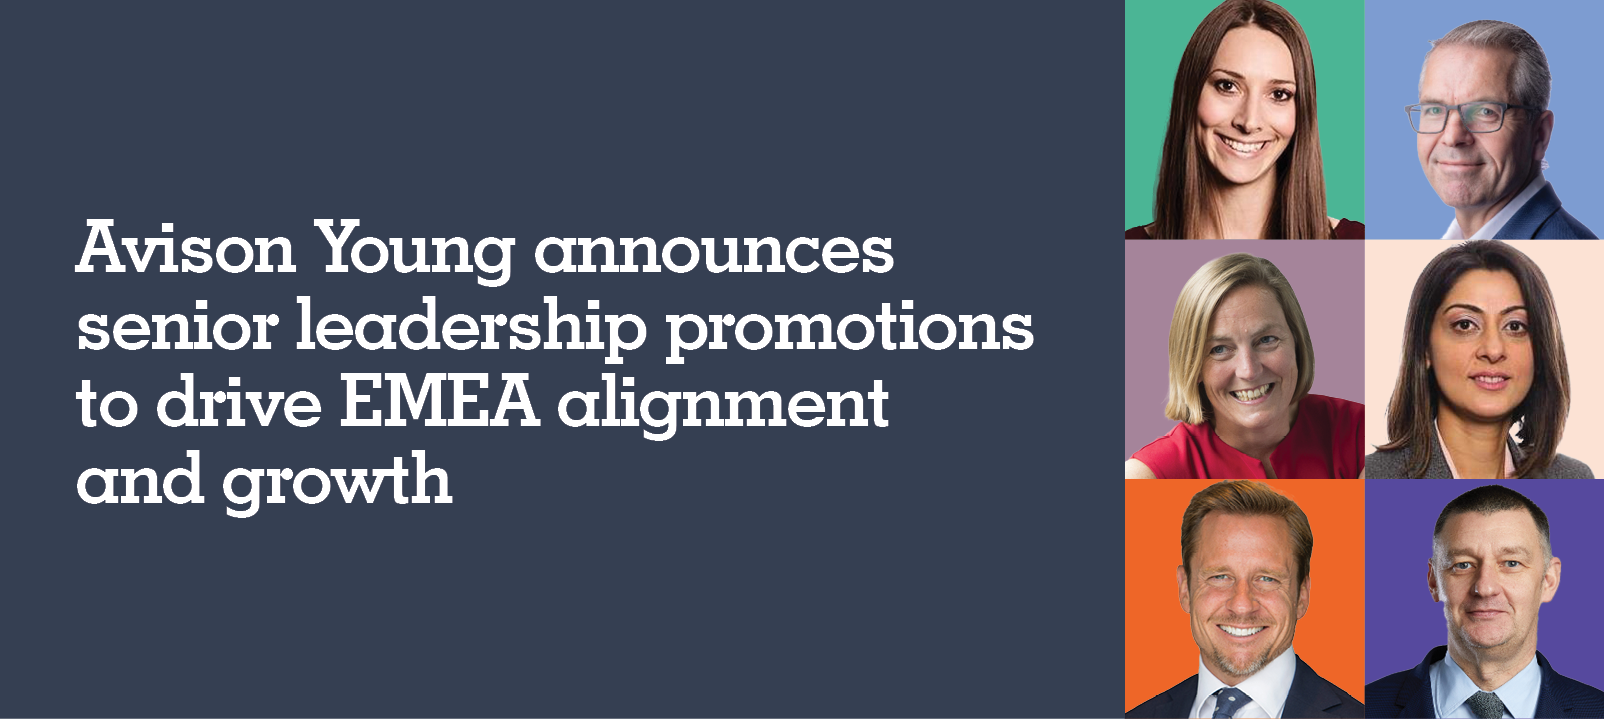 Avison Young befördert Führungskräfte für weiteres Wachstum in EMEA